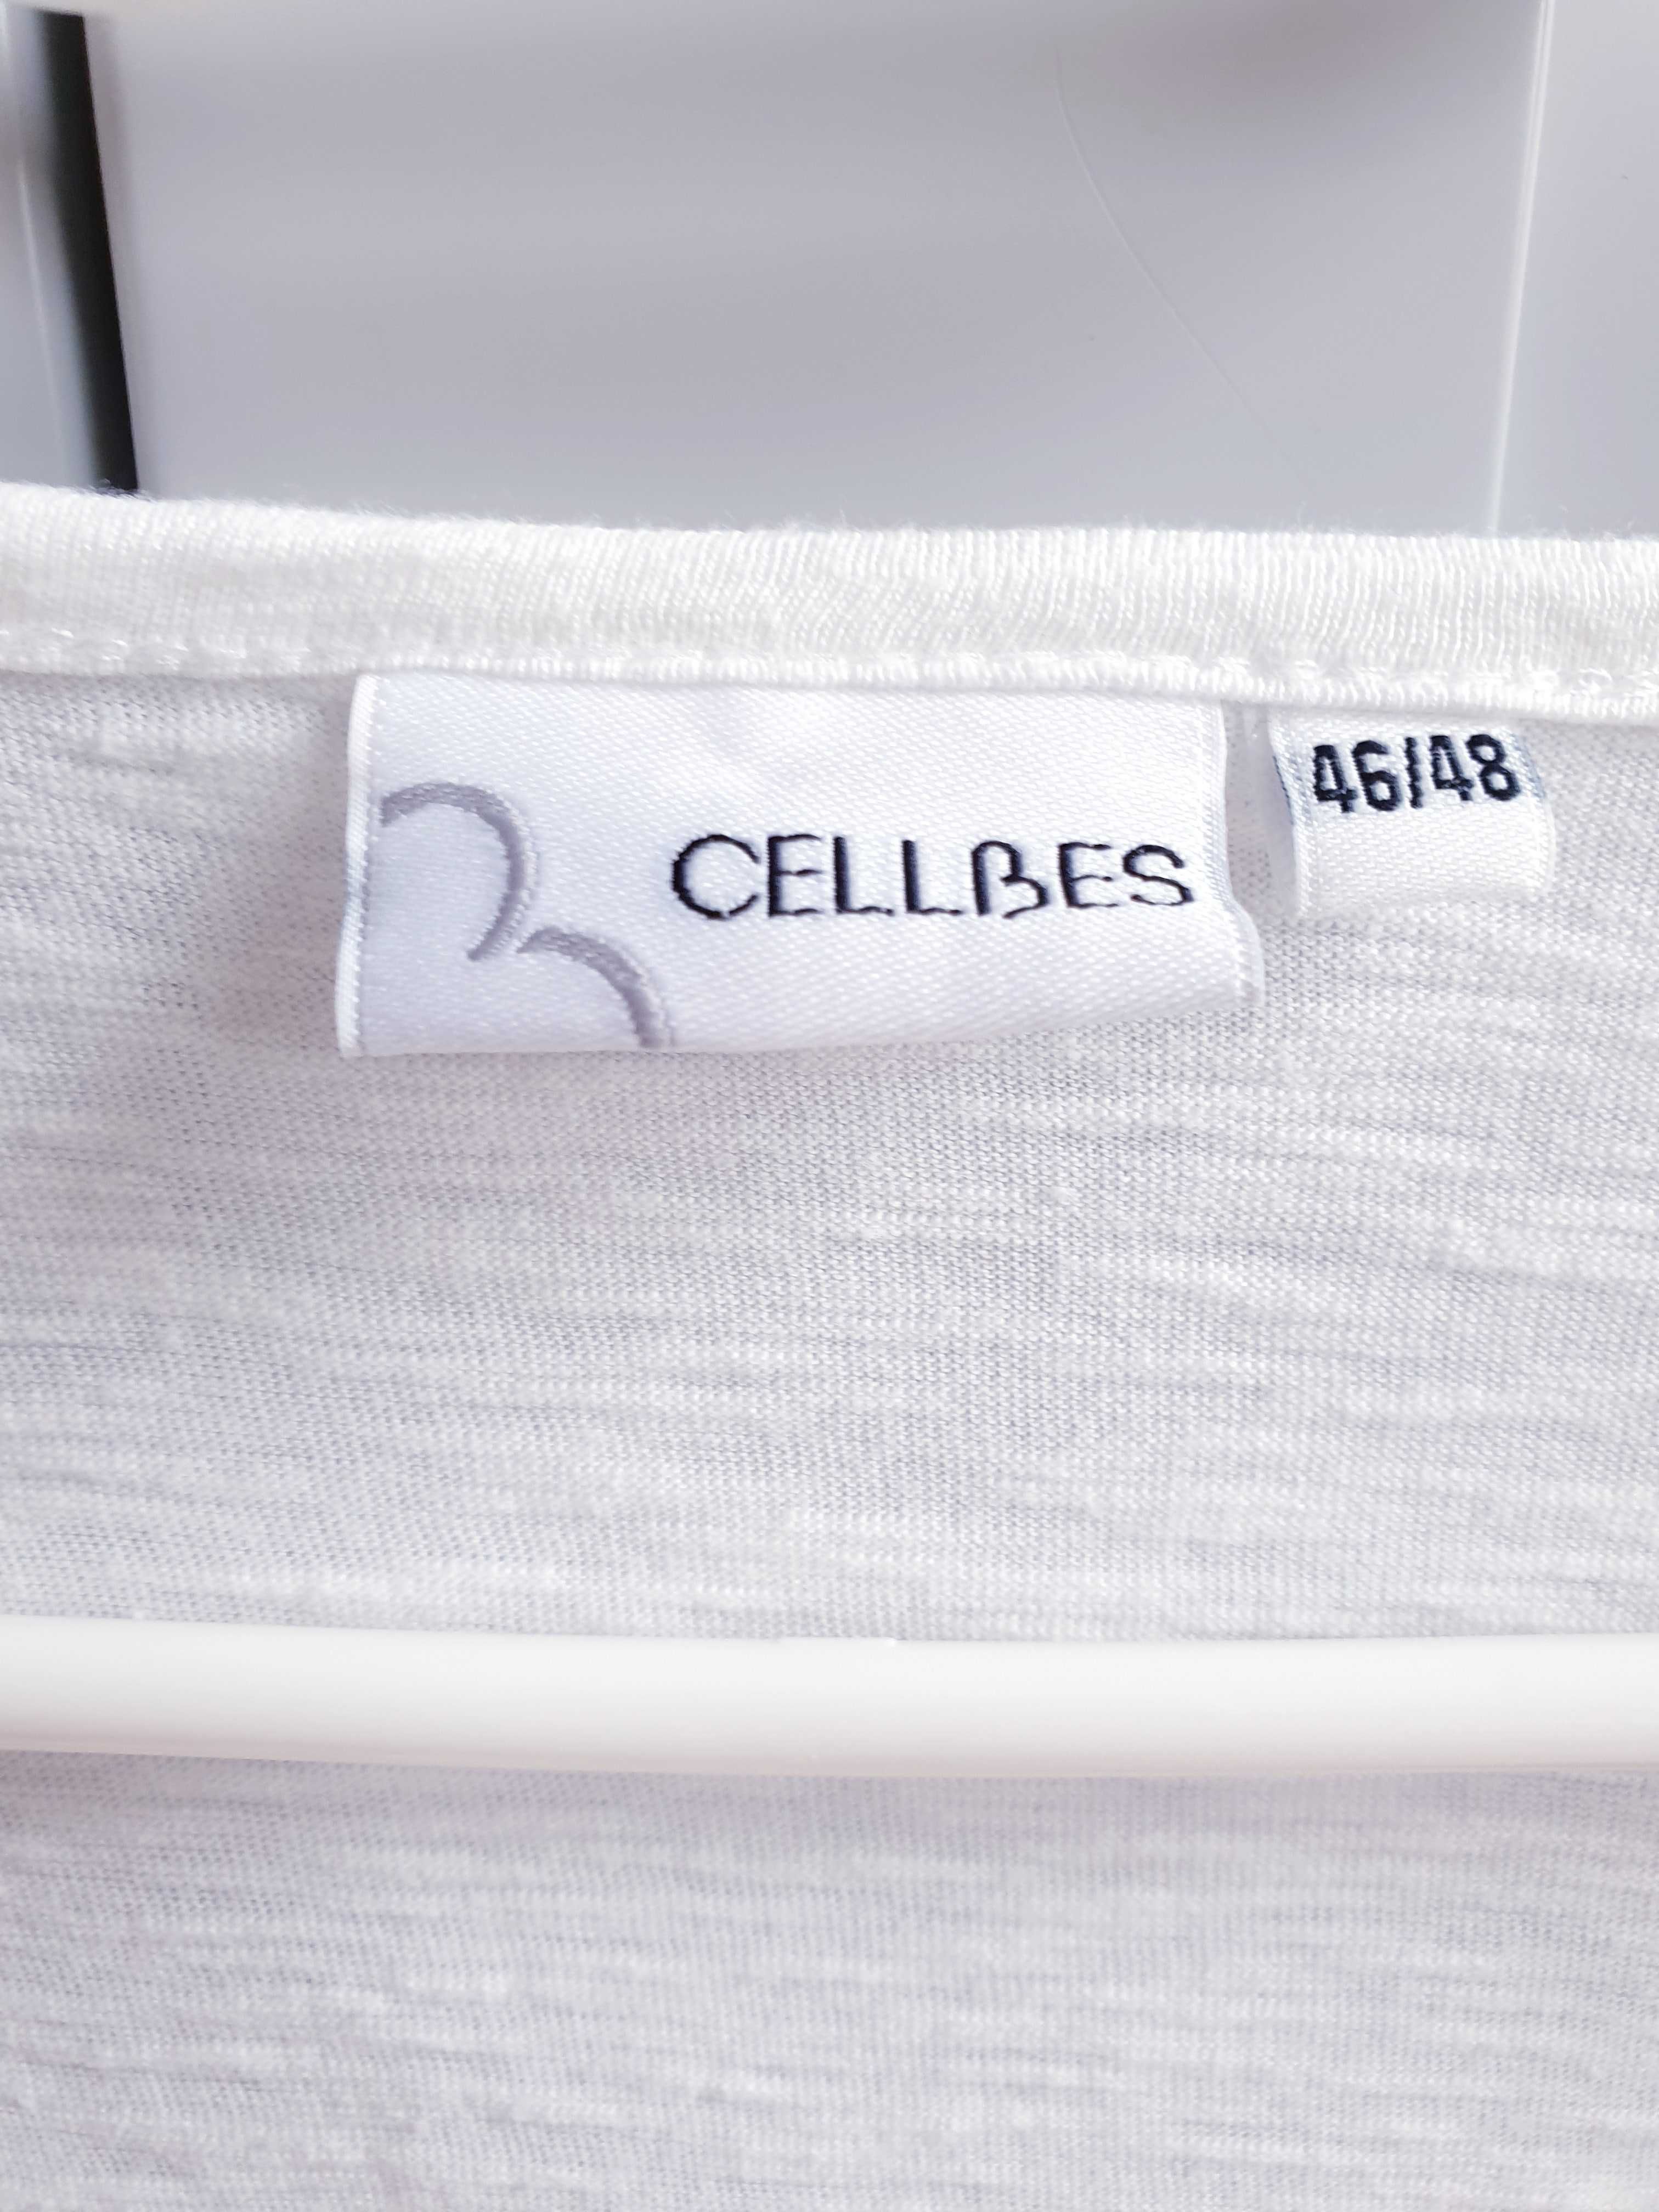 Biała kremowa bluzka tunika haftowana Cellbes 46 48